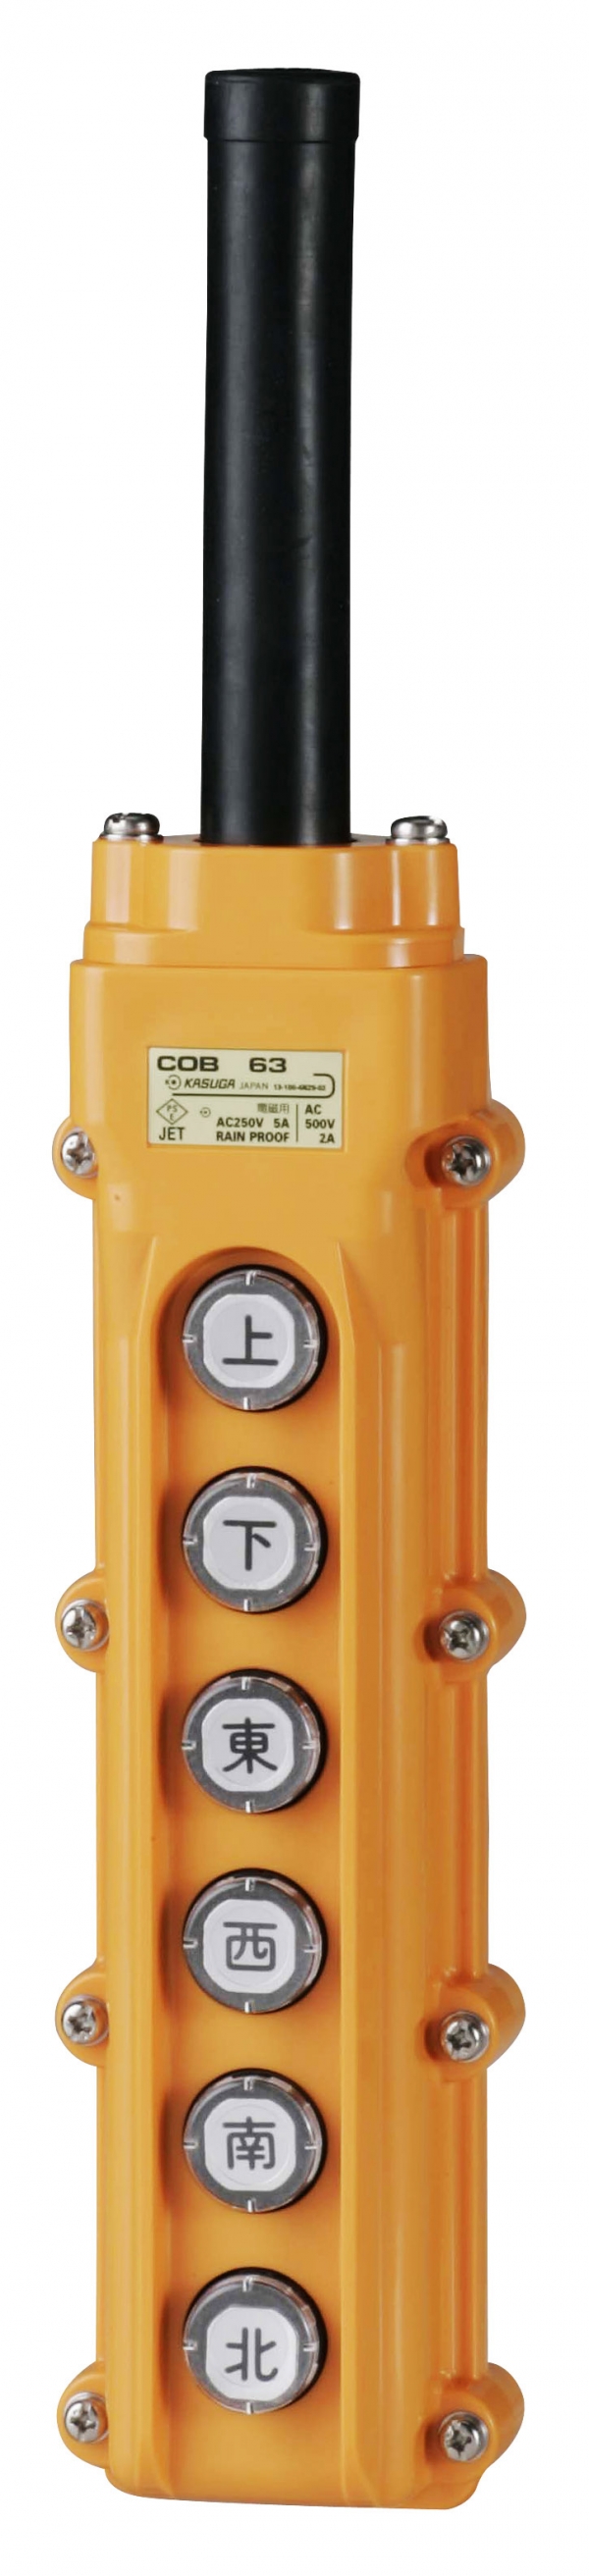 パトライト COB64 ホイスト用押ボタン開閉器 電動機間接操作用 ボタン数8 COB60シリーズ - 1